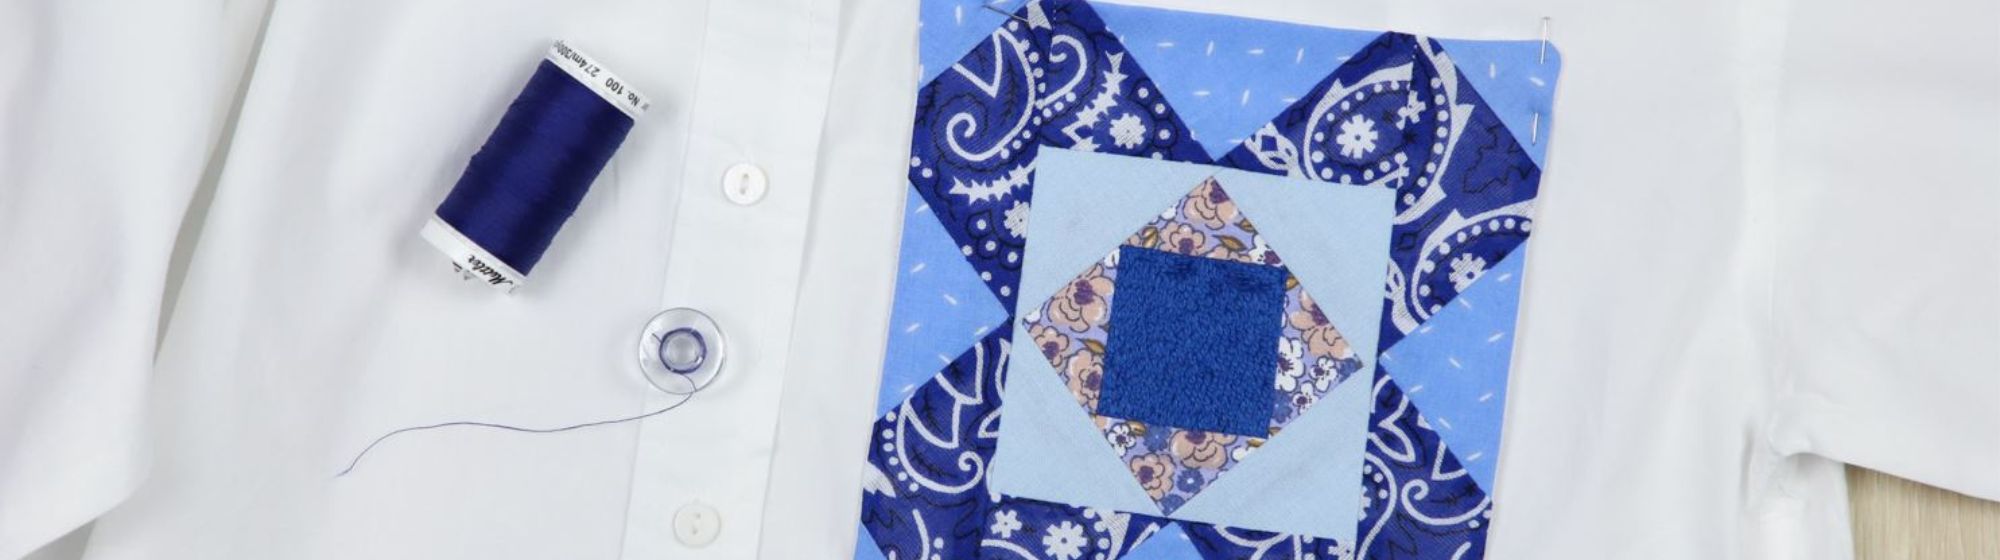 Chemise personnalisée avec une poche en patchwork